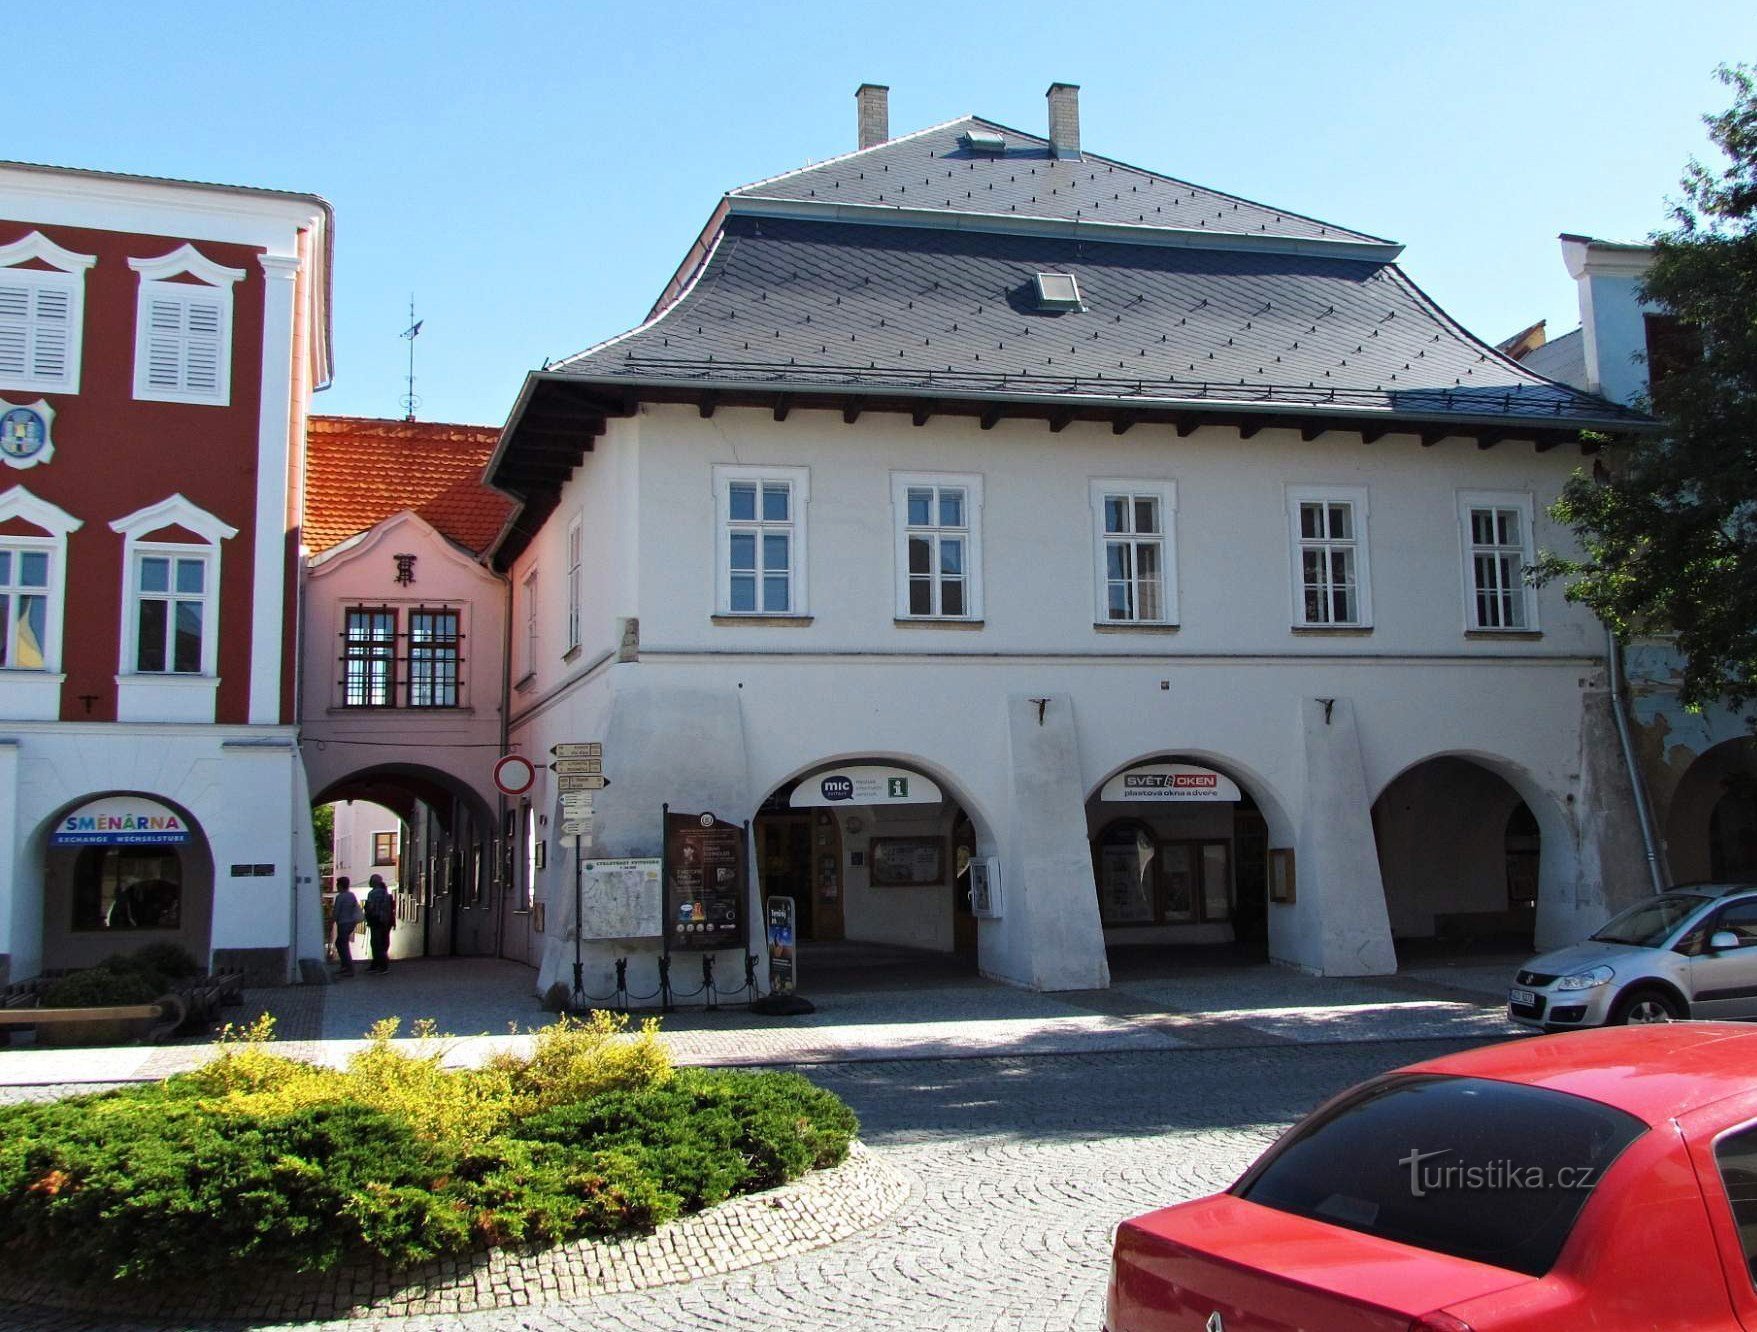 Svitavy の広場にある旧市庁舎と U Mouřenina 家